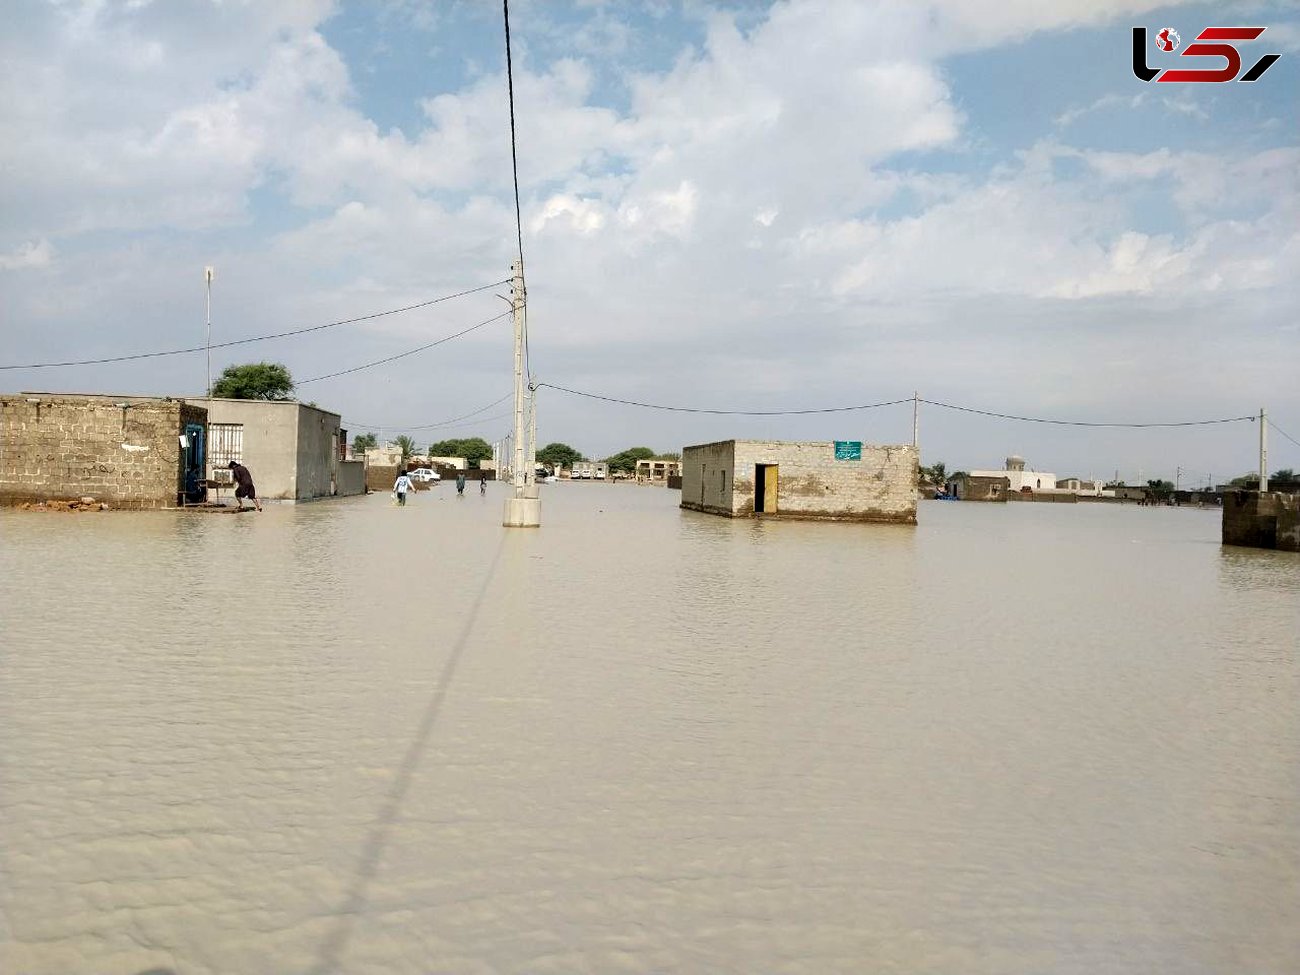 ایستگاه پیرسهراب سیستان و بلوچستان آمار ۲۰۶میلیمتر بارش را ثبت کرد/ مردم منطقه نیازمند امدادرسانی فوری/ احتمال بارندگی سنگین از دوشنبه